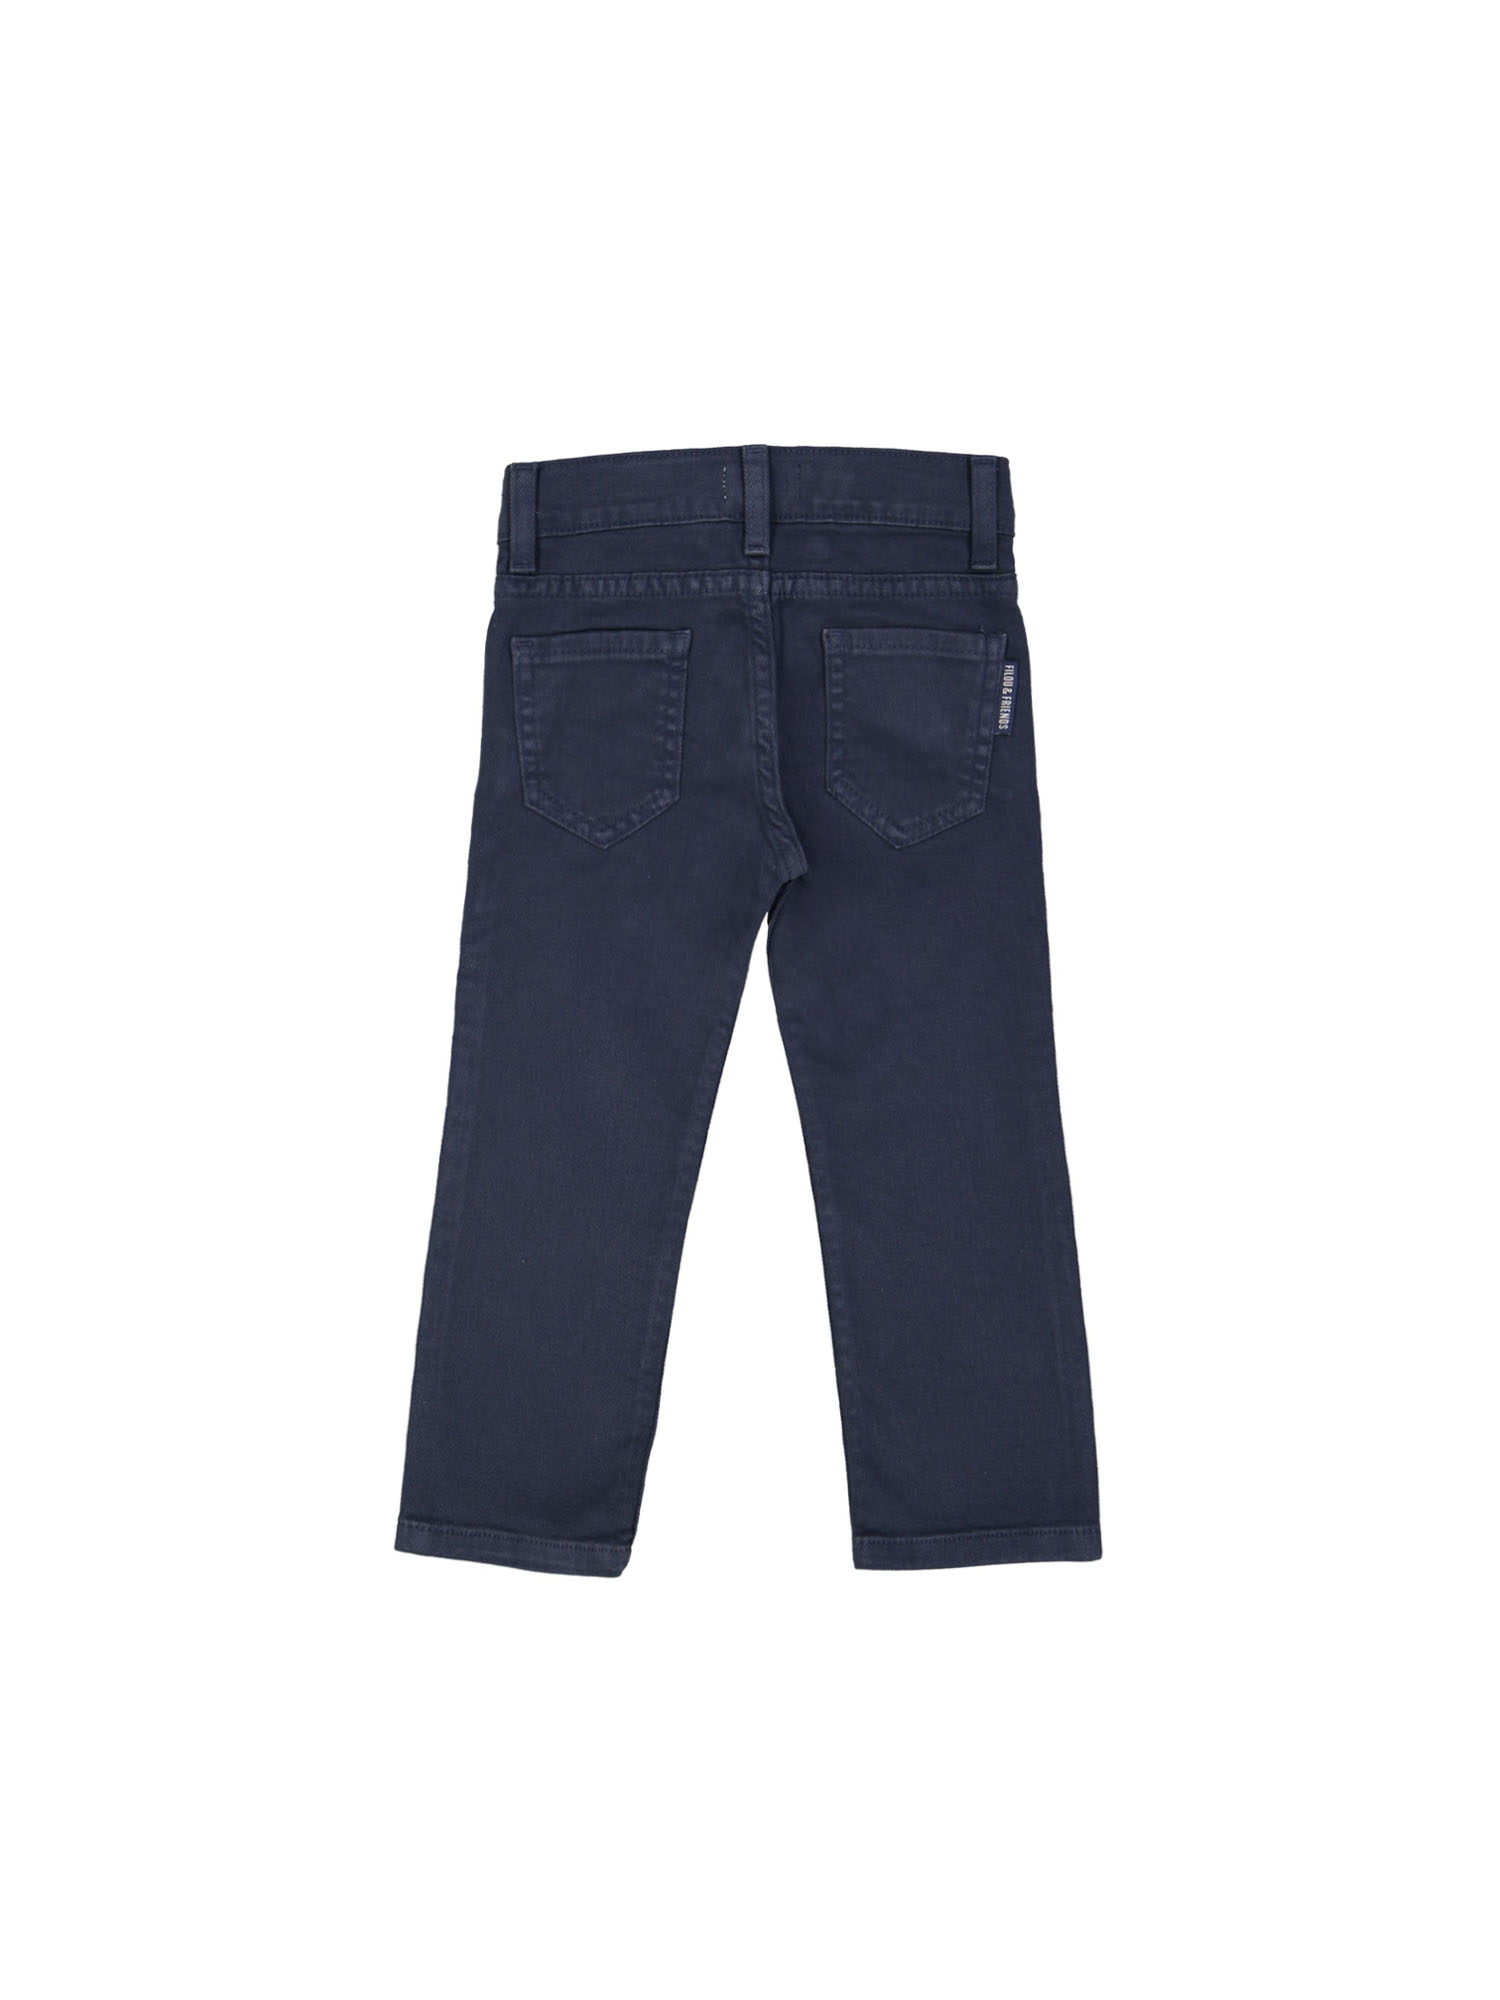 pants regular zipper dark blue